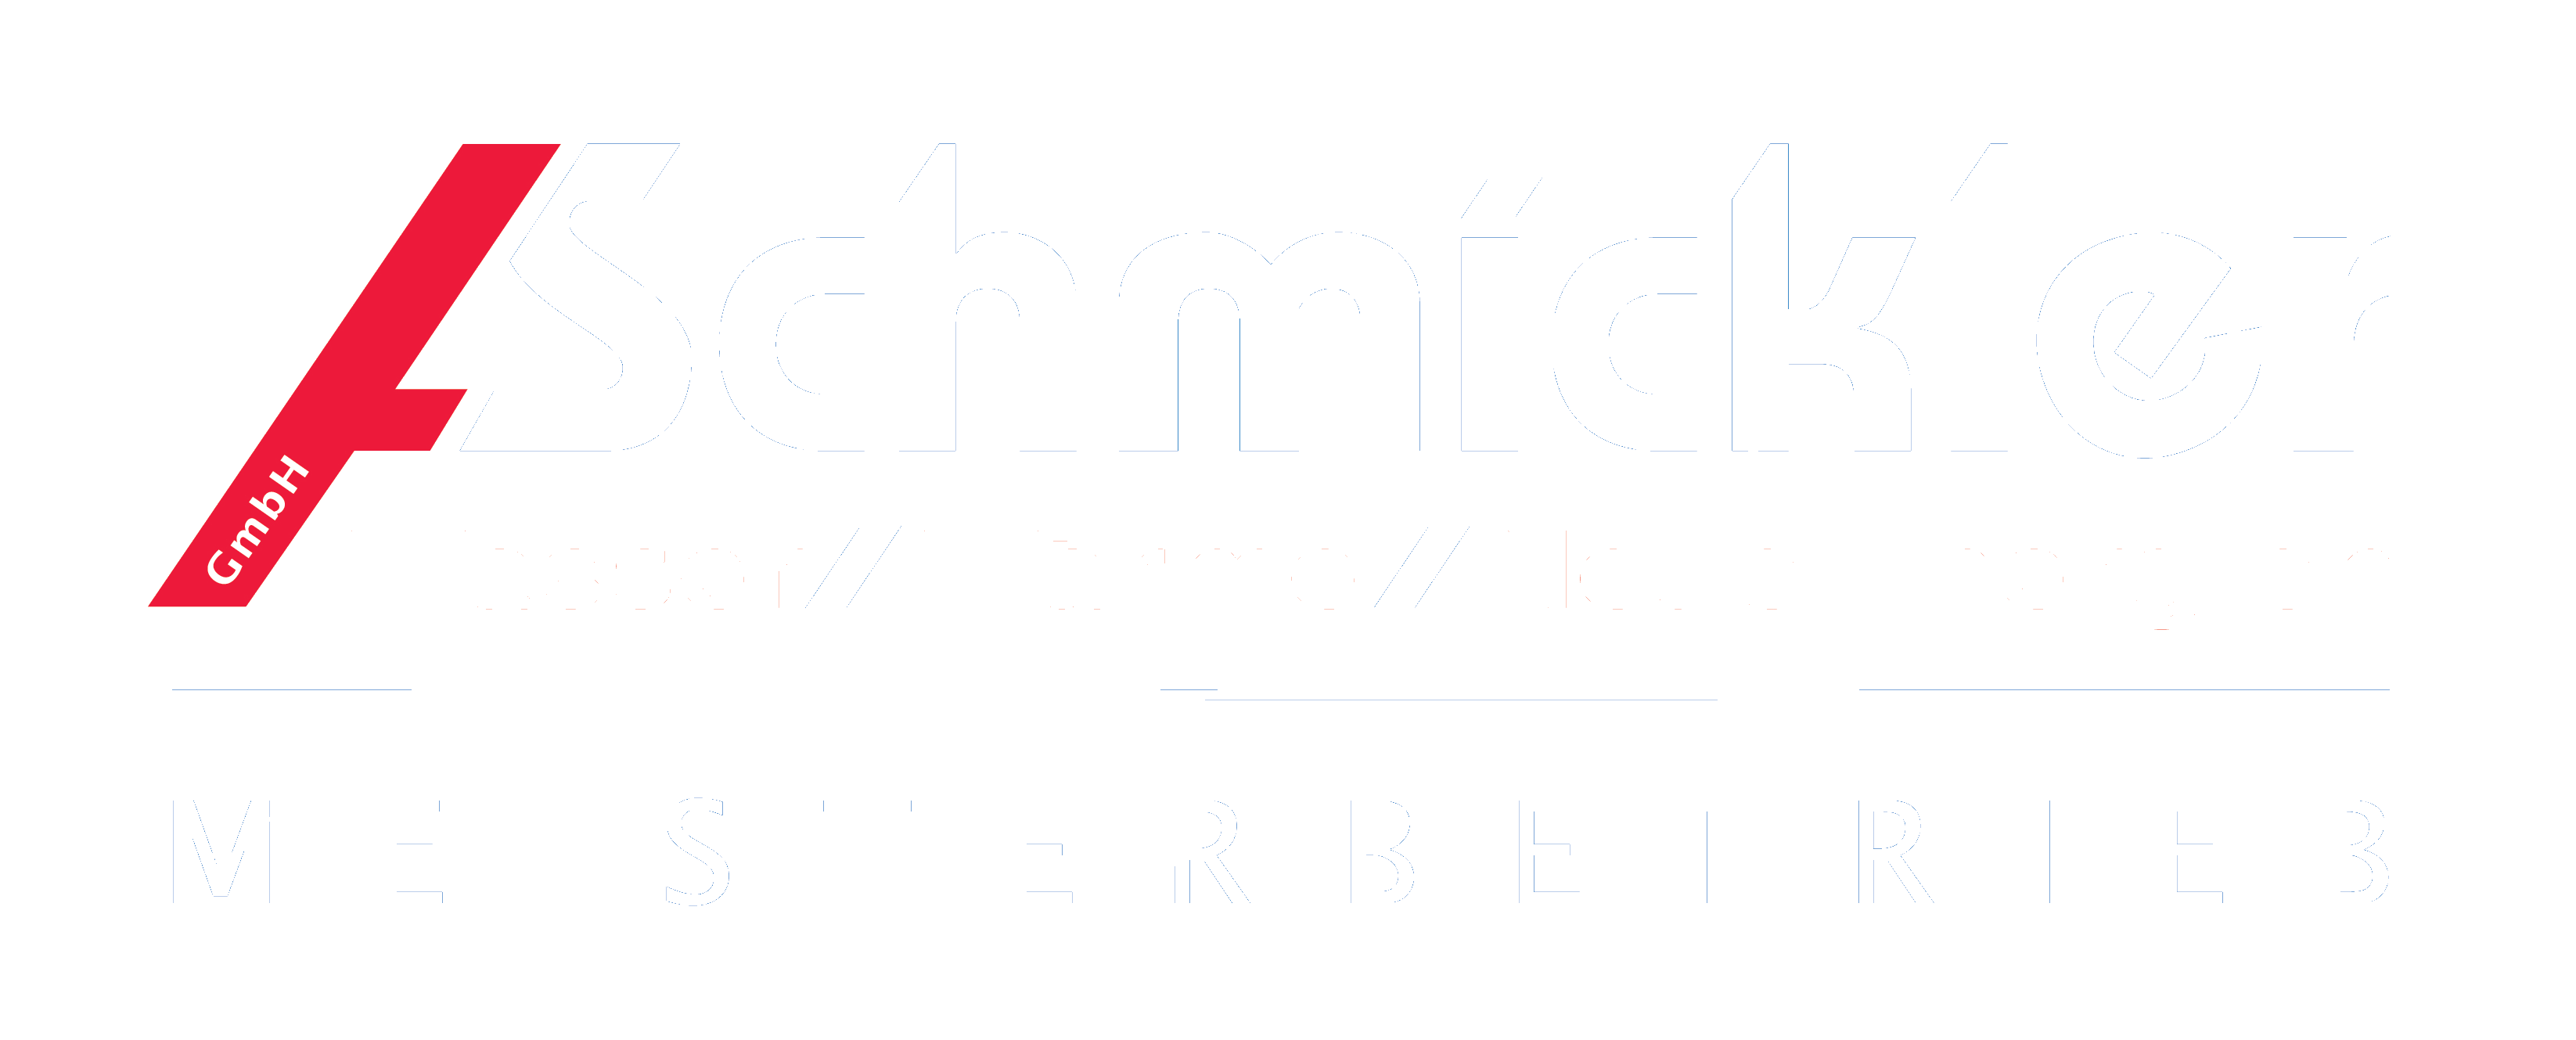 Alexander Schmickler Gmbh -- Logo